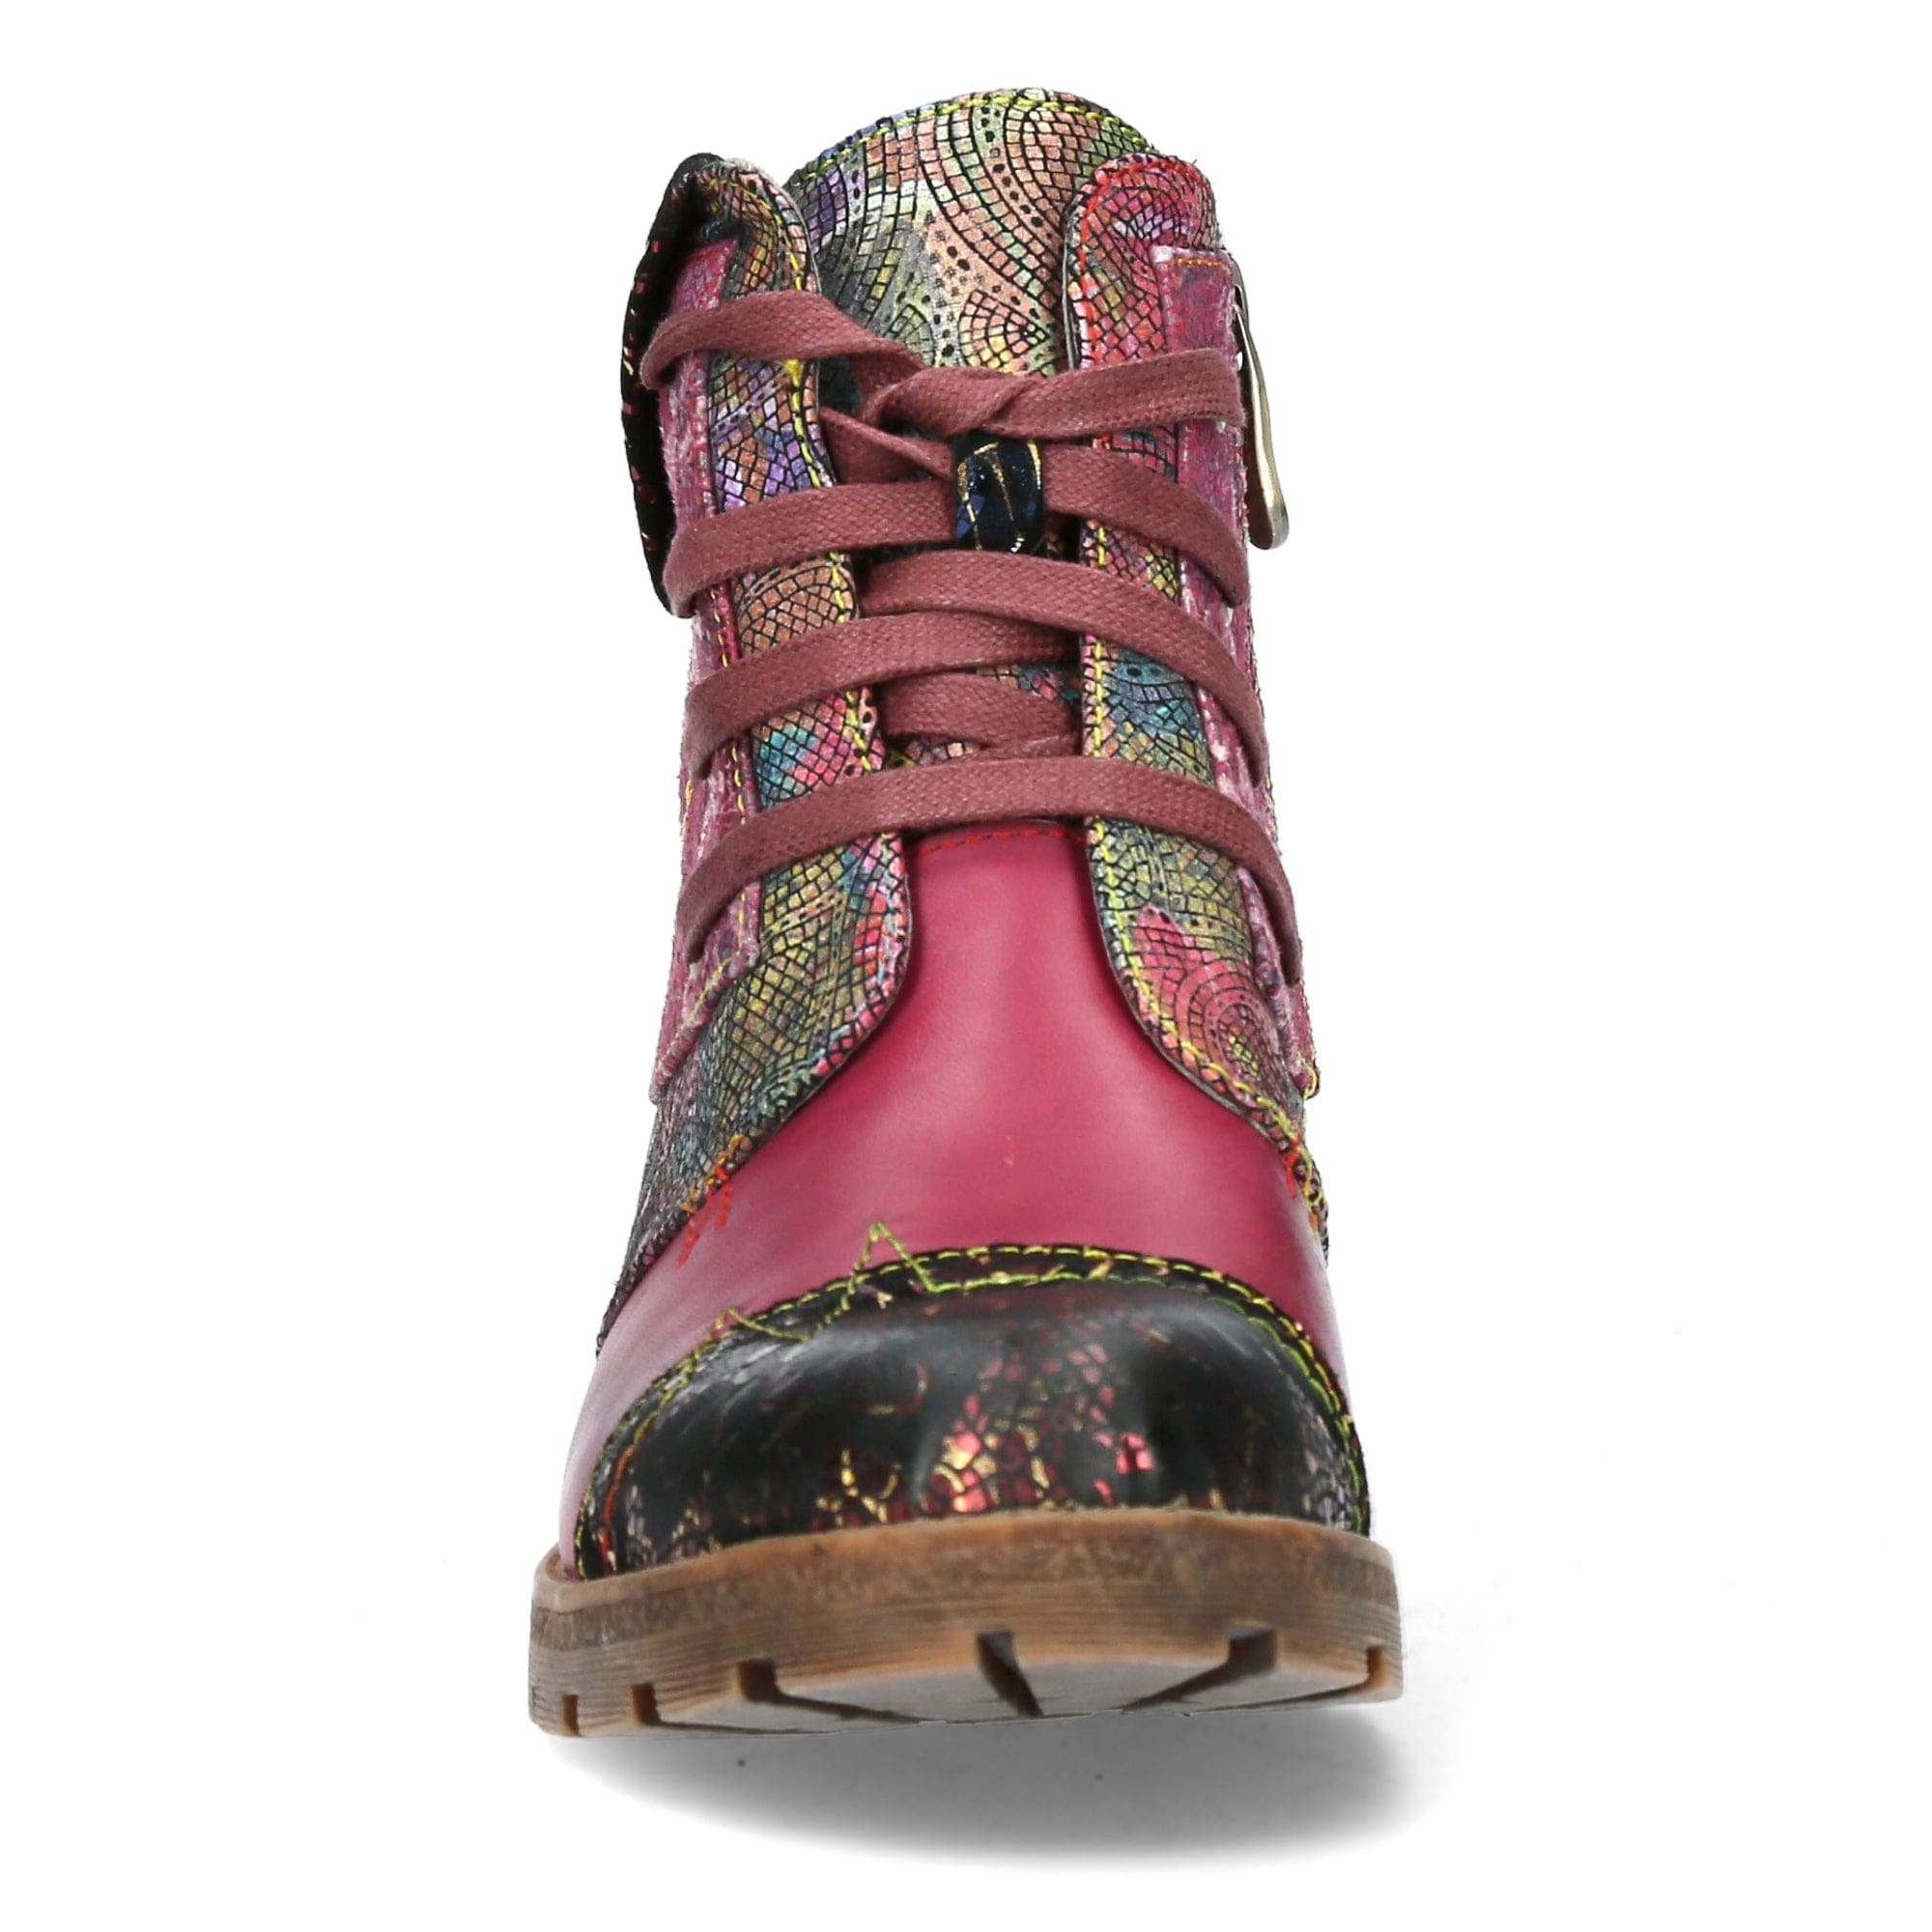 Shoe COCRAILO 23 - Boots